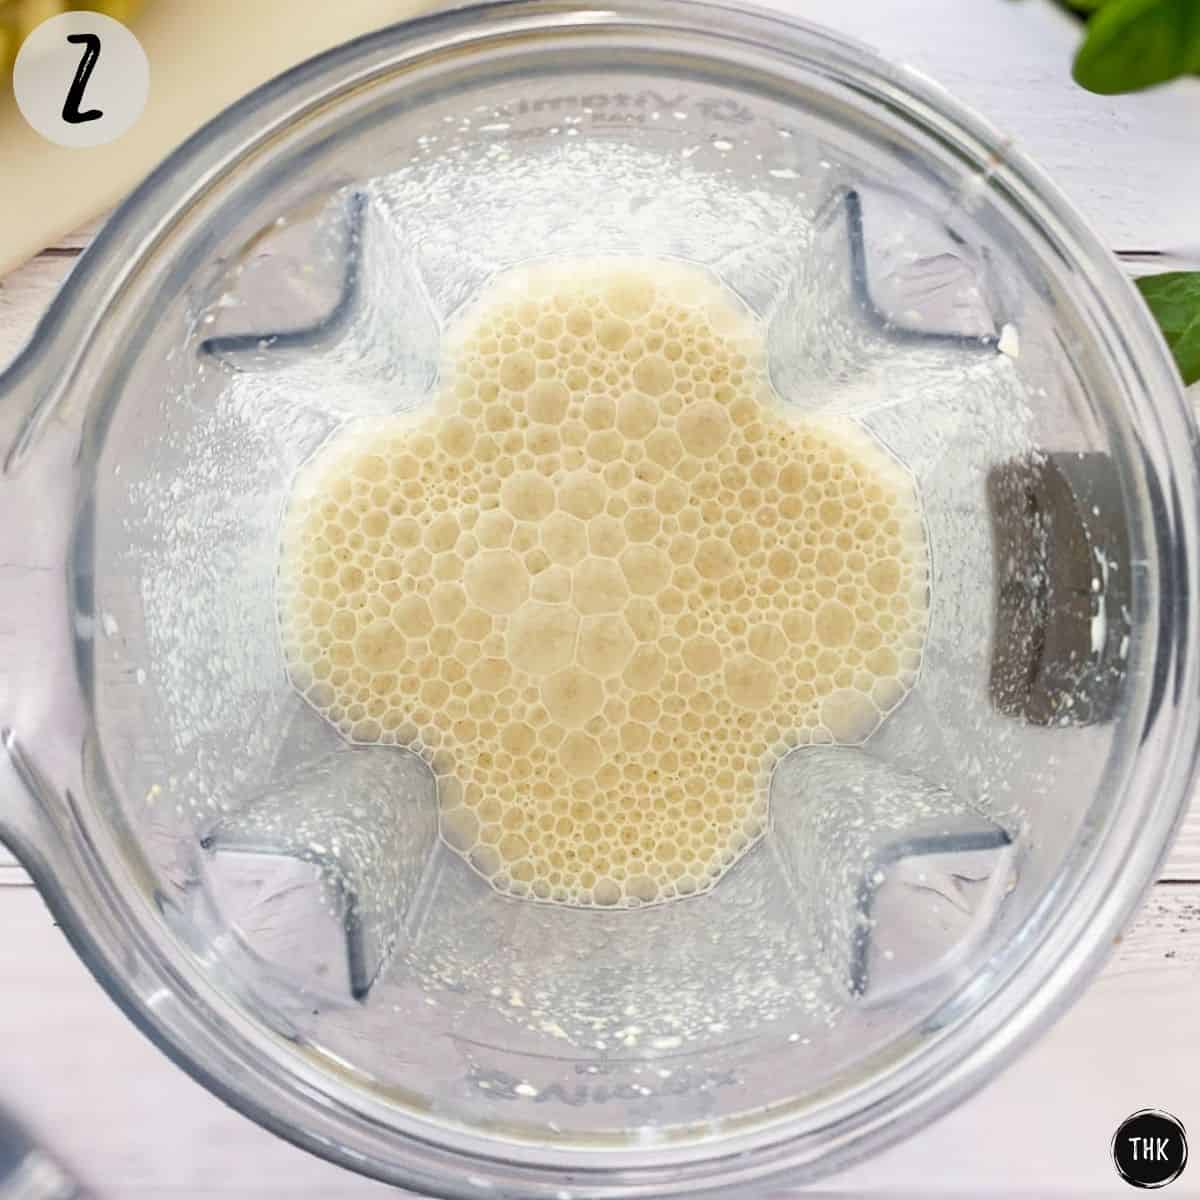 White blended liquid inside blender.